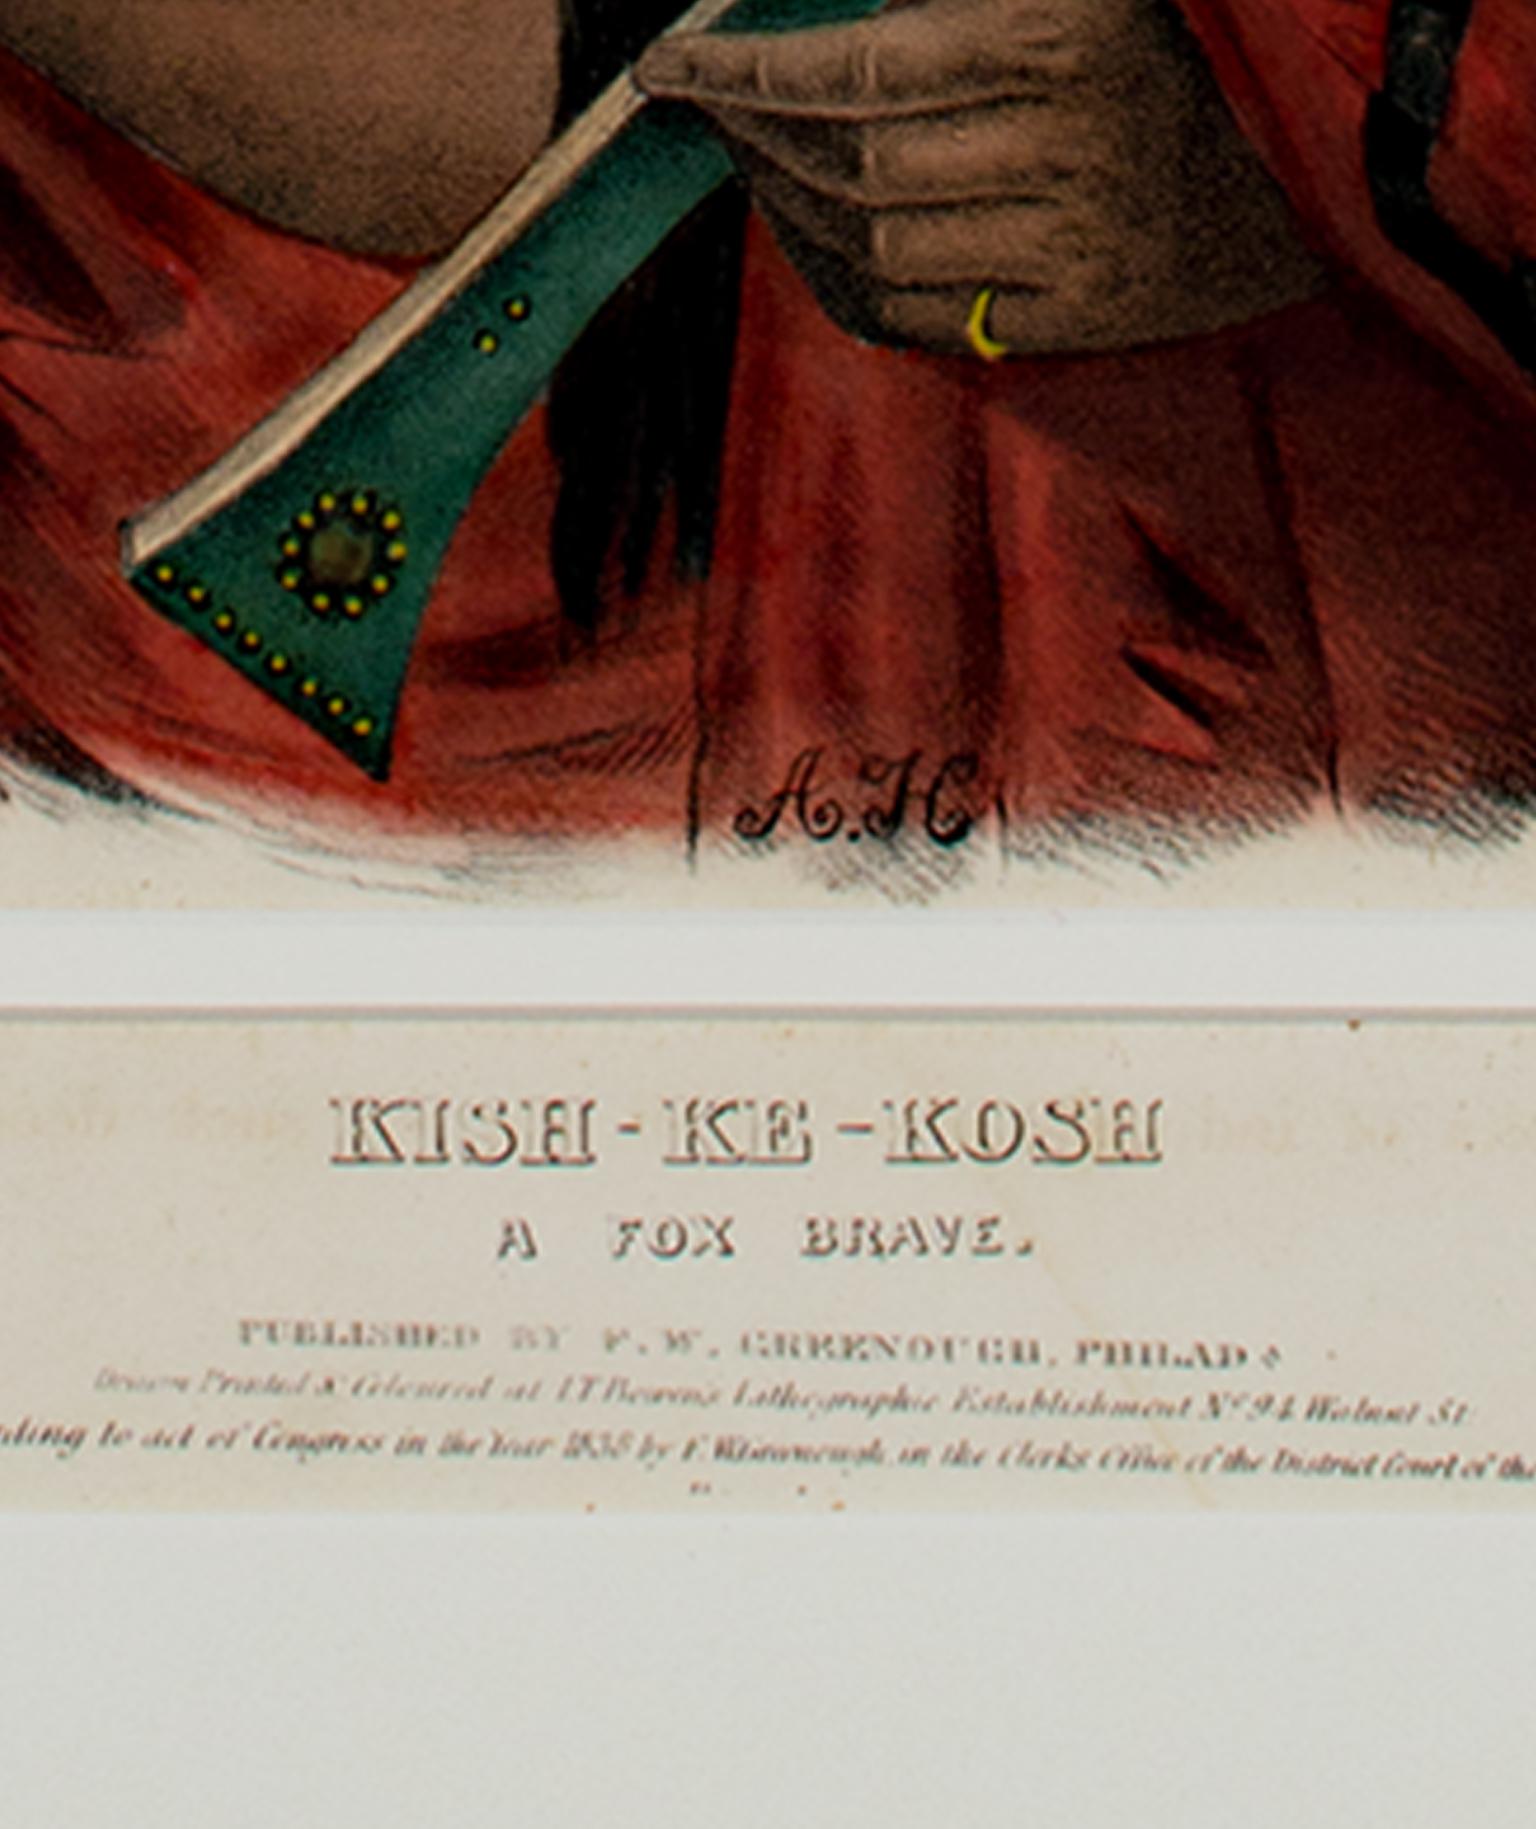 Farblithographie des 19. Jahrhunderts, indigene Porträtfigur, Federn, Bisonrot, Bisonrot (Akademisch), Print, von McKenney & Hall